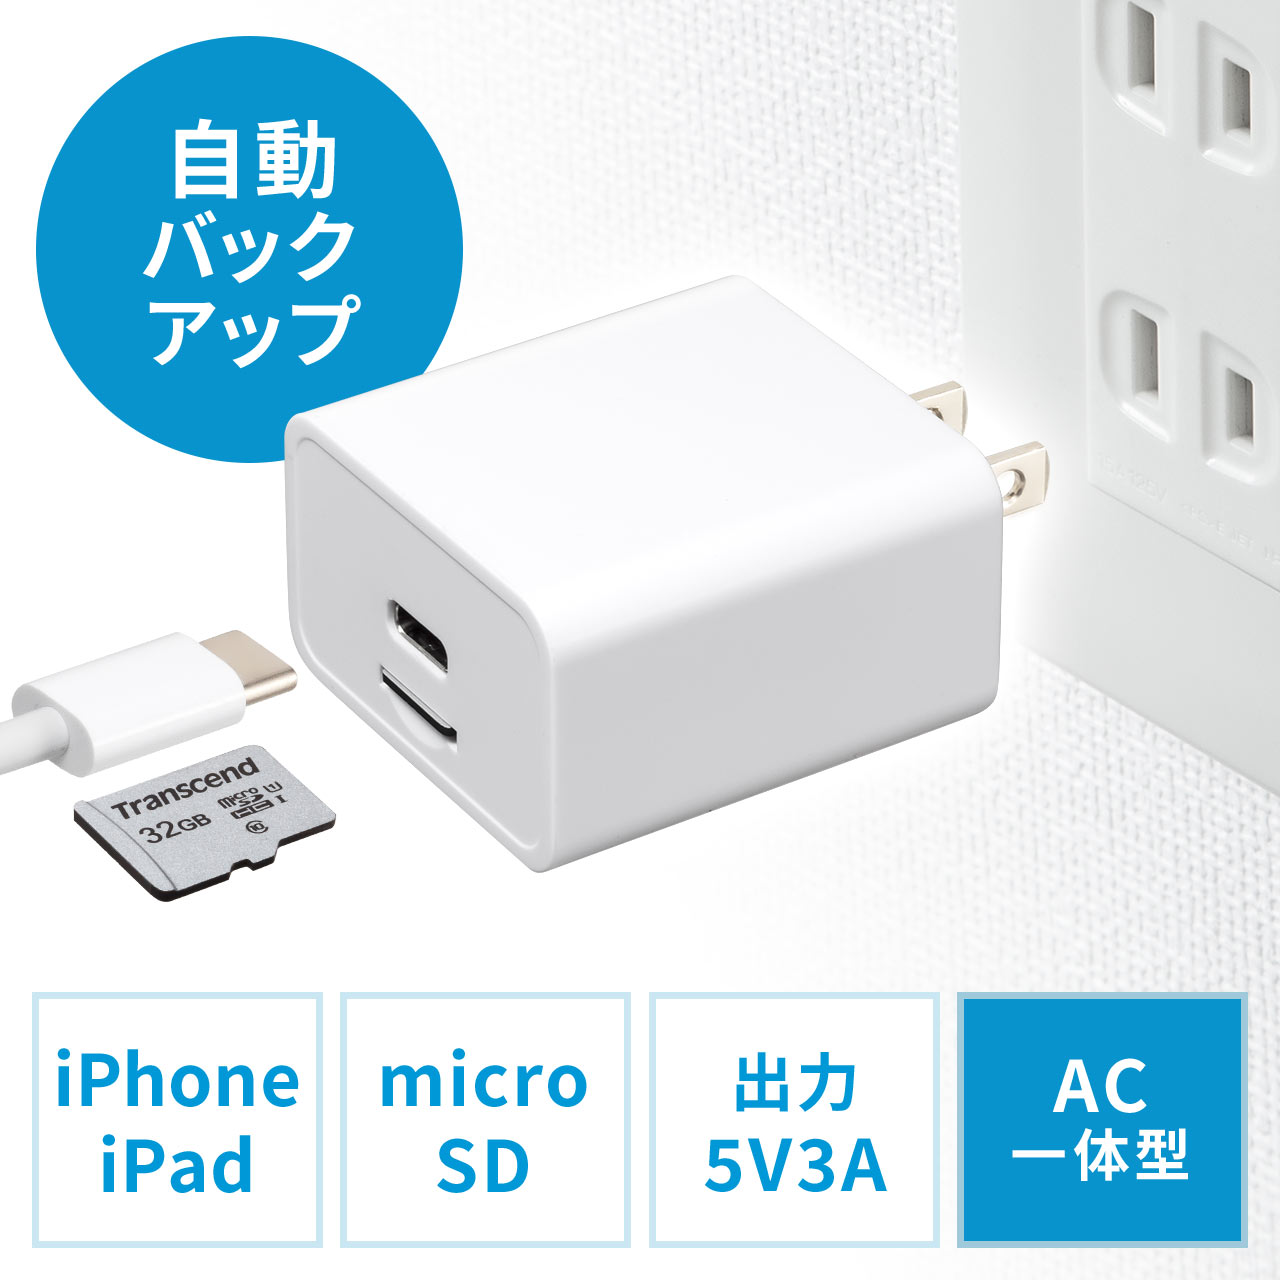 バックアップ付きAC充電器 充電器 iPhone iPad AC一体型 microSD保存 Type-C接続 専用アプリ  400-ADRIP012Wの販売商品 通販ならサンワダイレクト